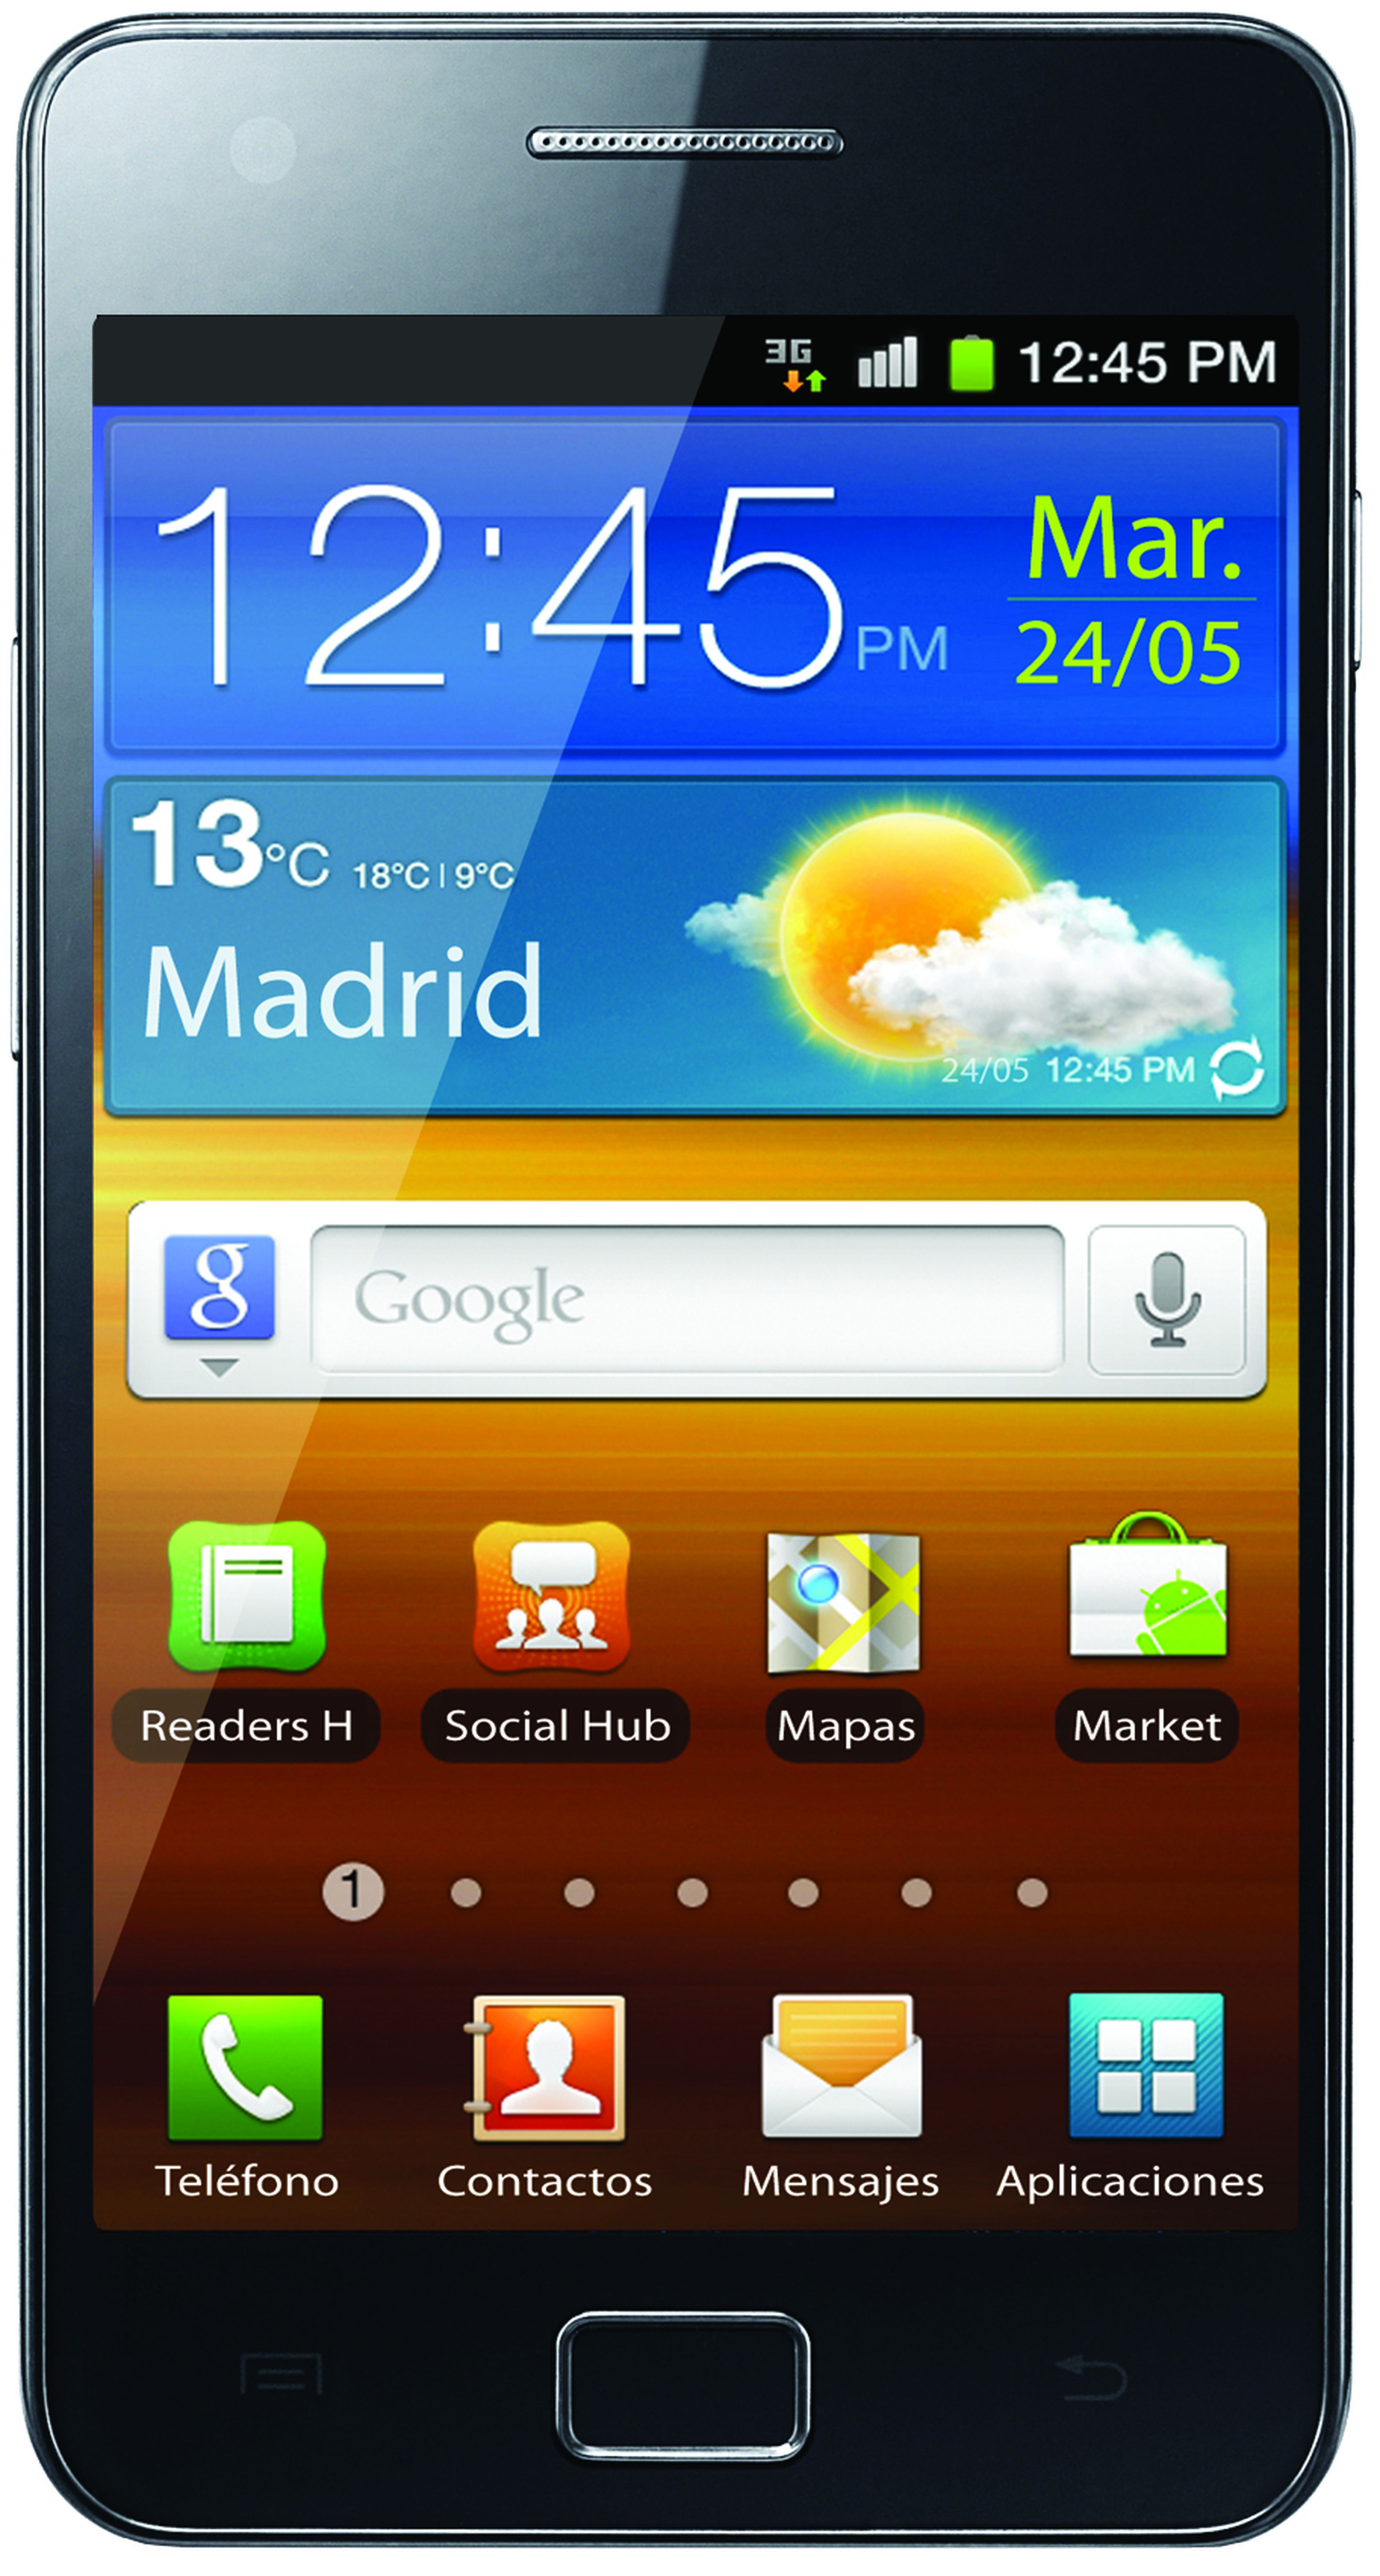 La pantalla del Samsung Galaxy SII es de 4,3"